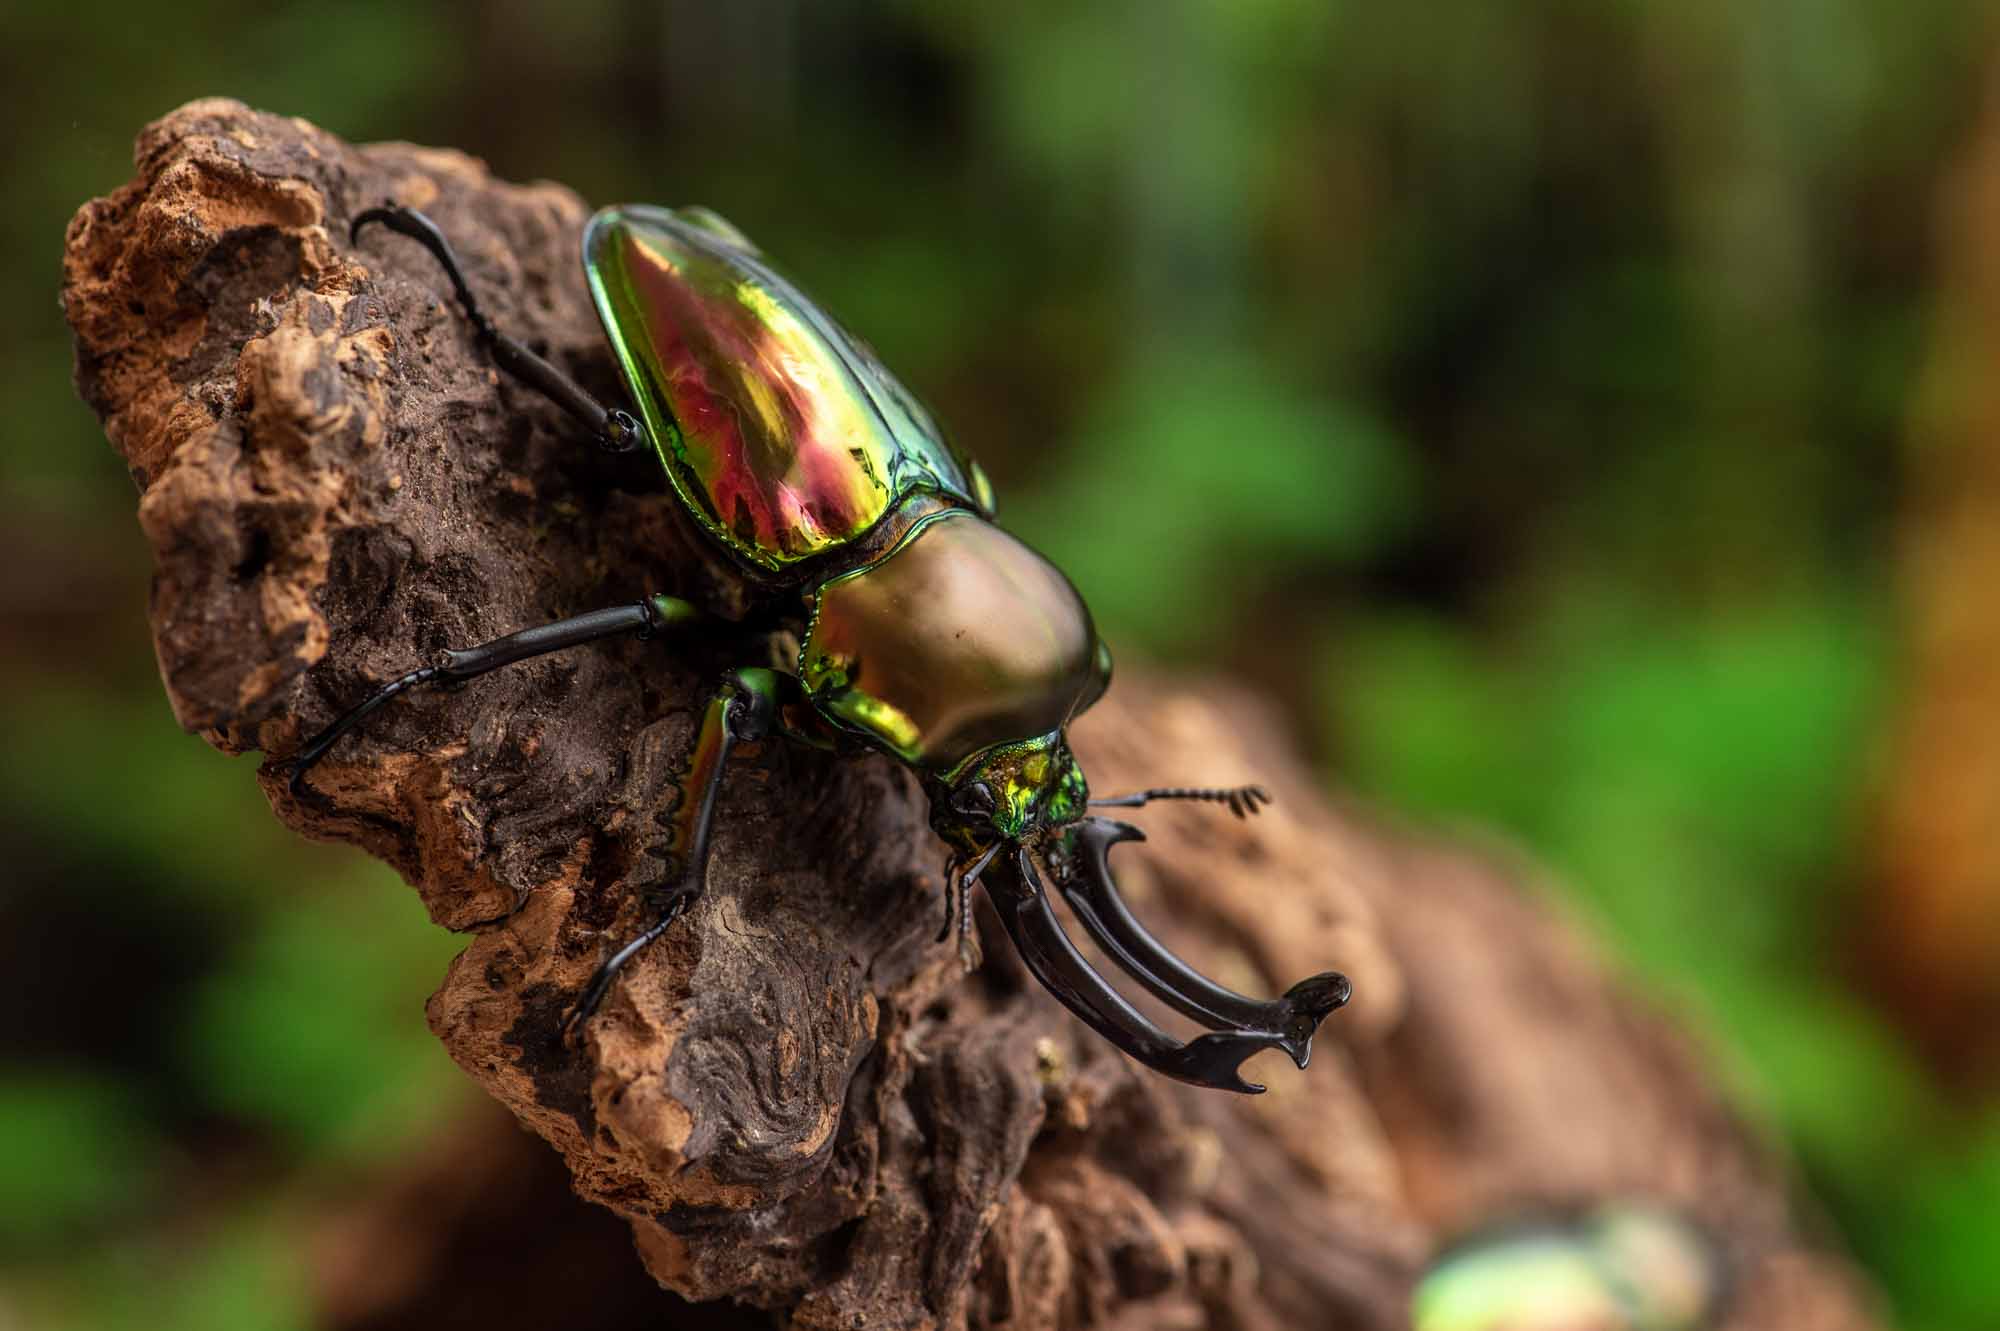 ニジイロクワガタ 虫の写真と生態なら昆虫写真図鑑 ムシミル